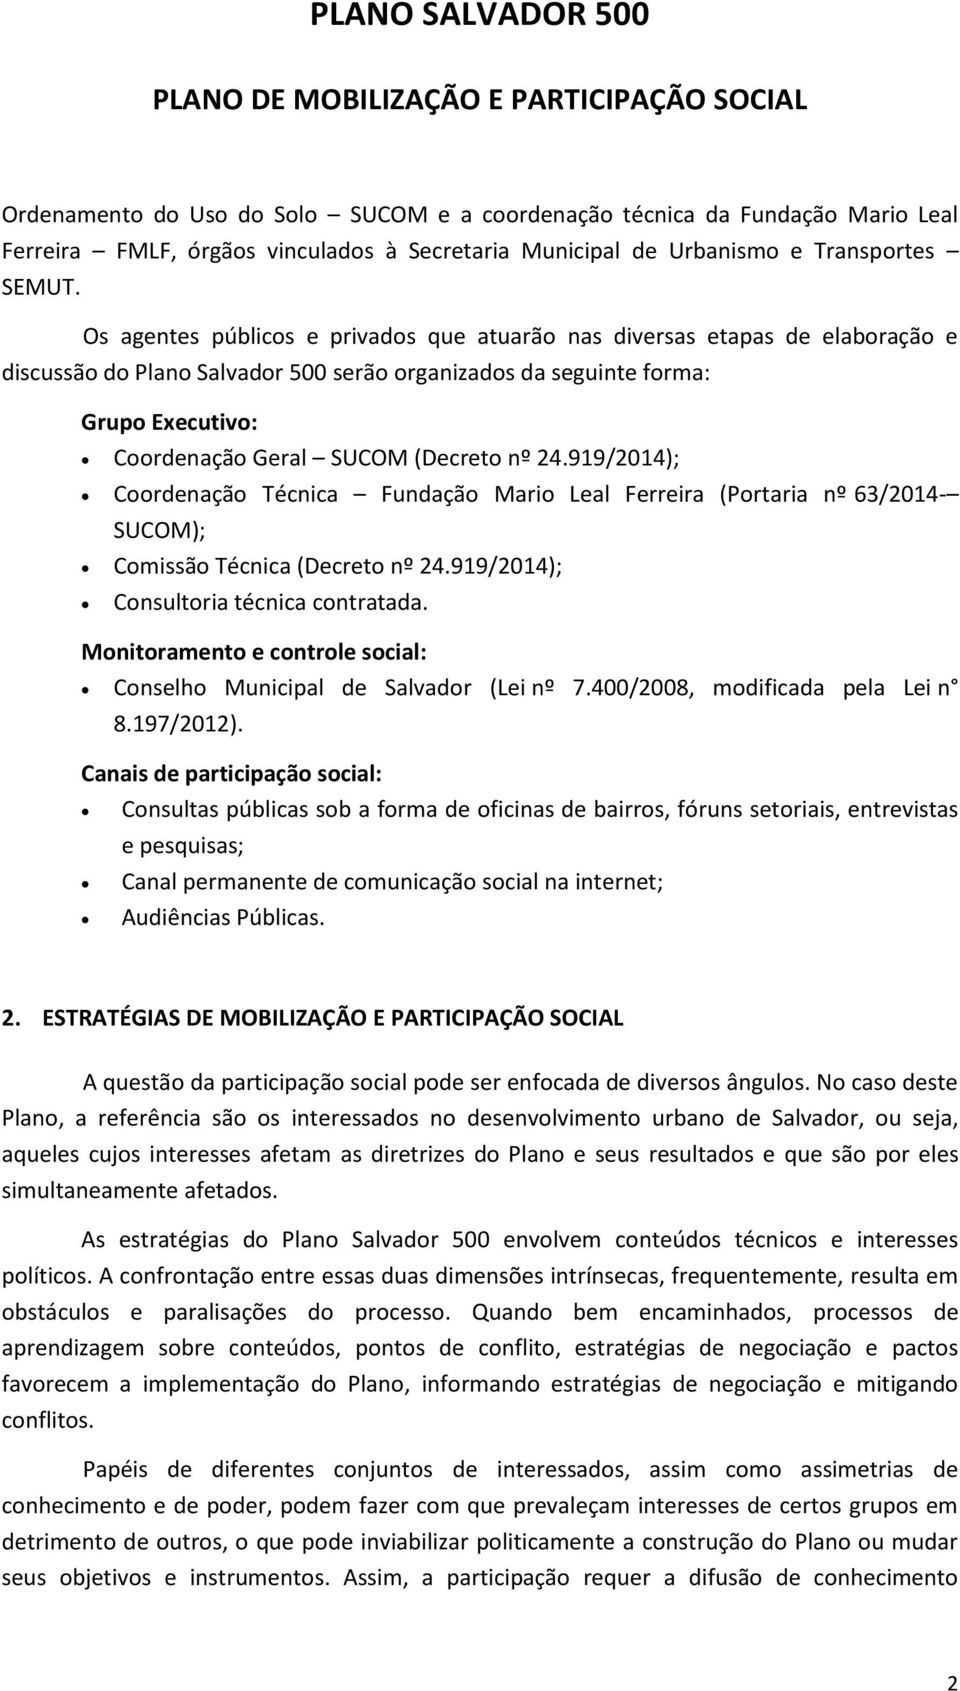 nº 24.919/2014); Coordenação Técnica Fundação Mario Leal Ferreira (Portaria nº 63/2014- SUCOM); Comissão Técnica (Decreto nº 24.919/2014); Consultoria técnica contratada.